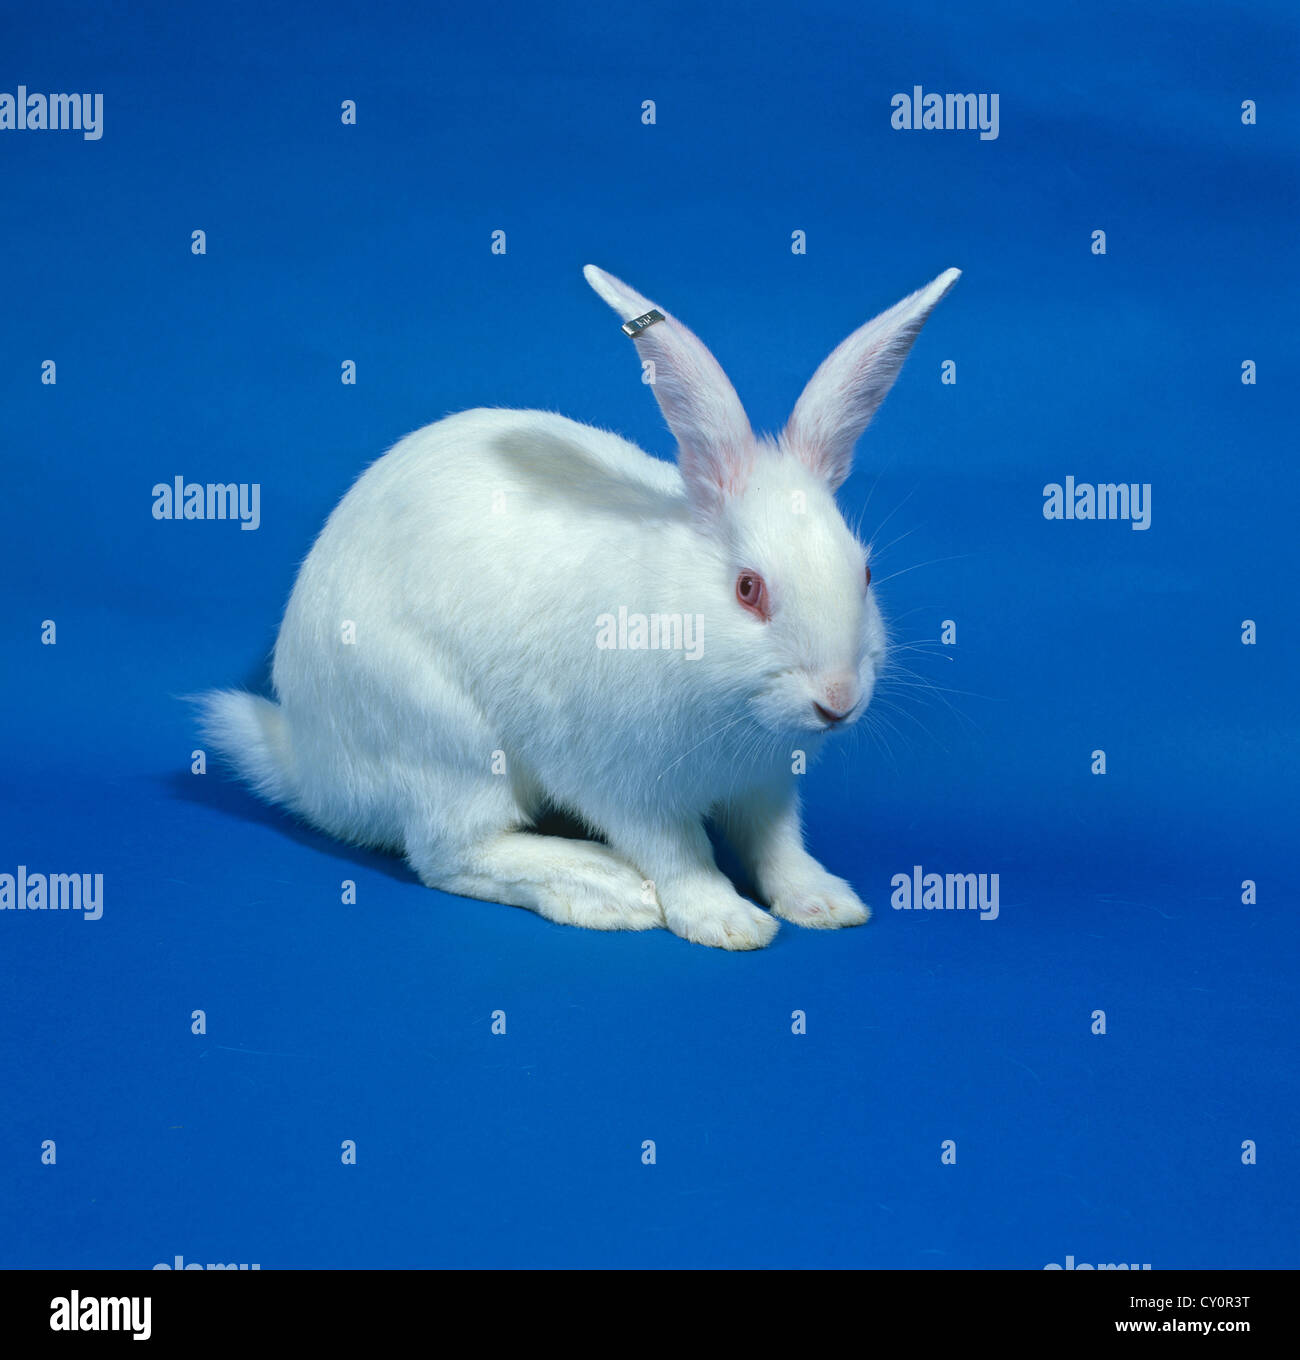 Un livre blanc de la recherche en laboratoire, la race de lapin blanc de Nouvelle- Zélande Banque D'Images